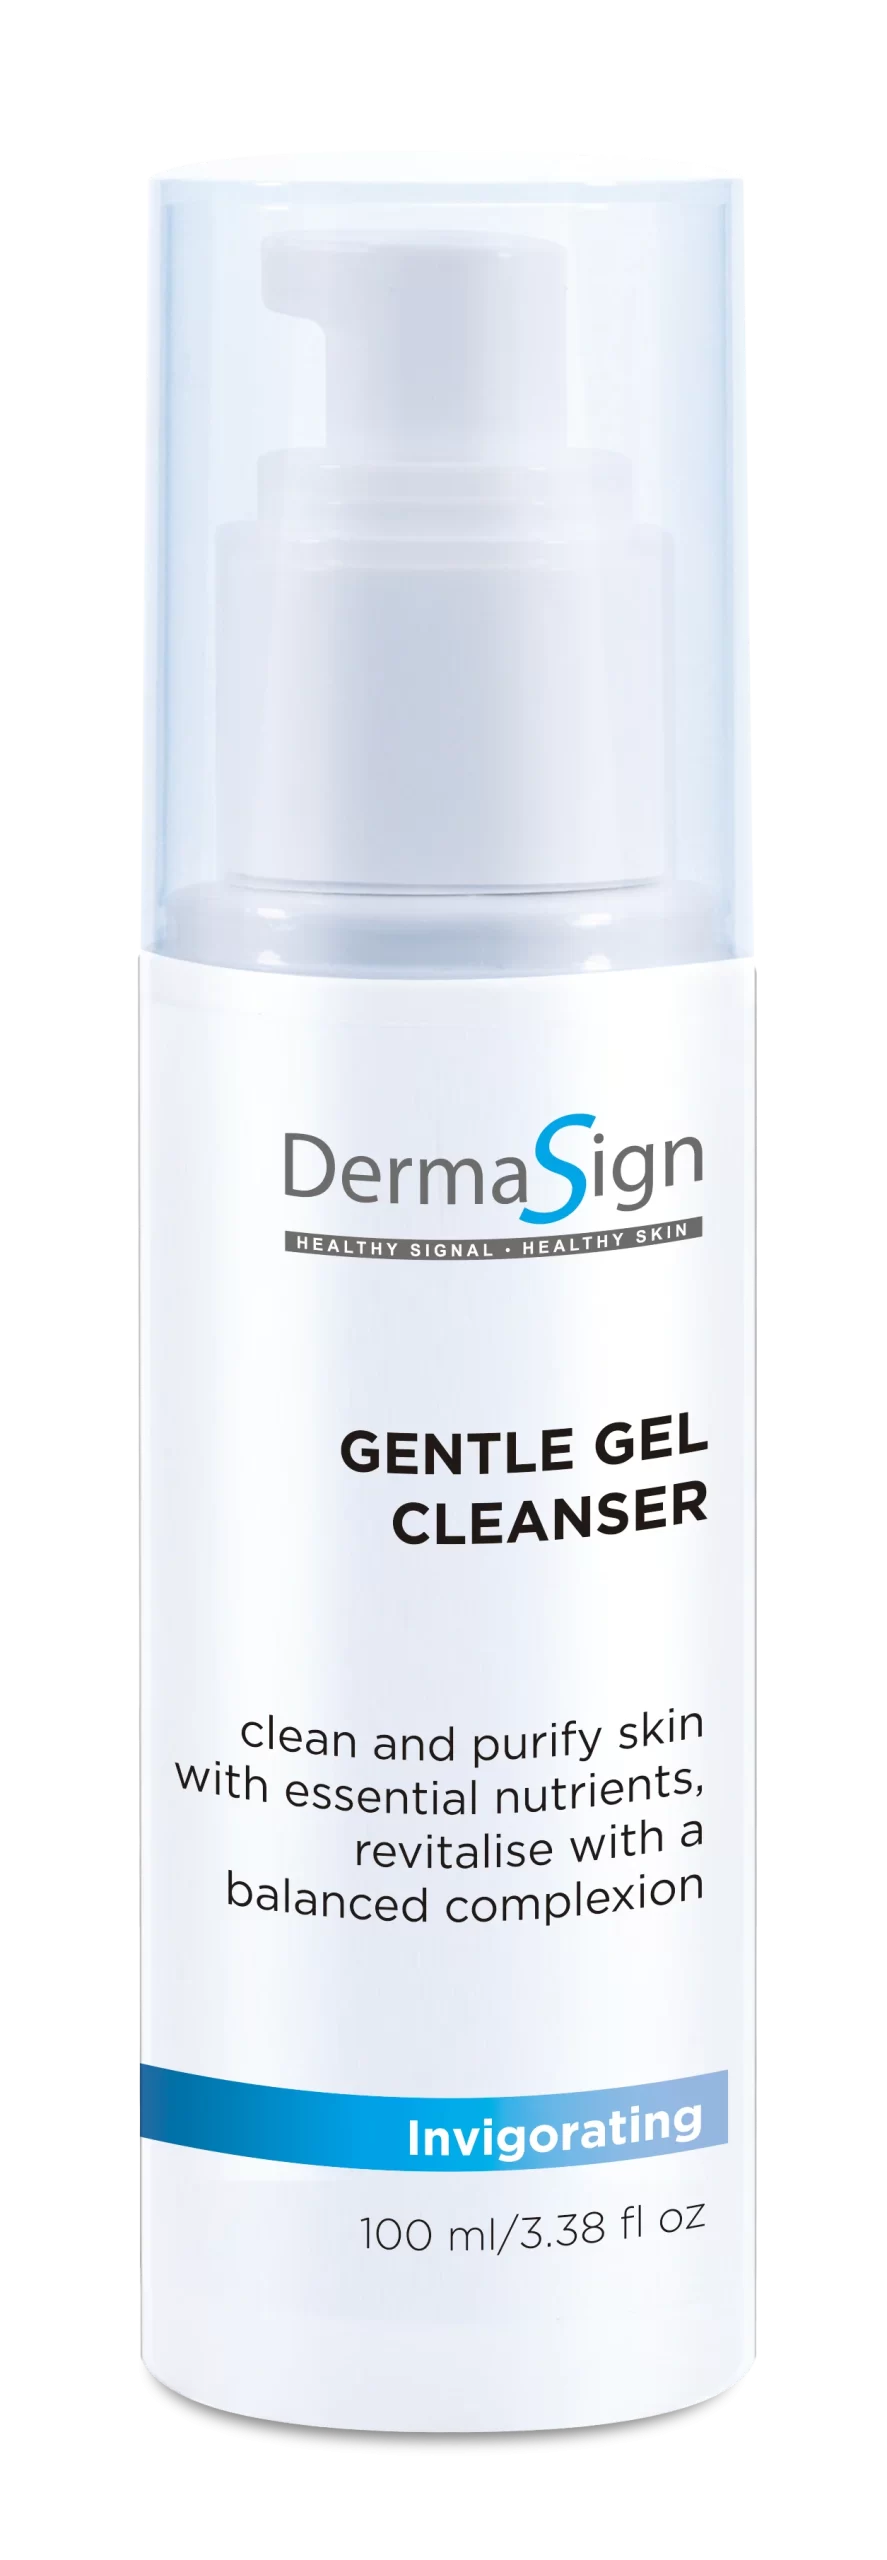 DermaSign 深層淨膚潔面啫喱 (Gentle Gel Cleanser)